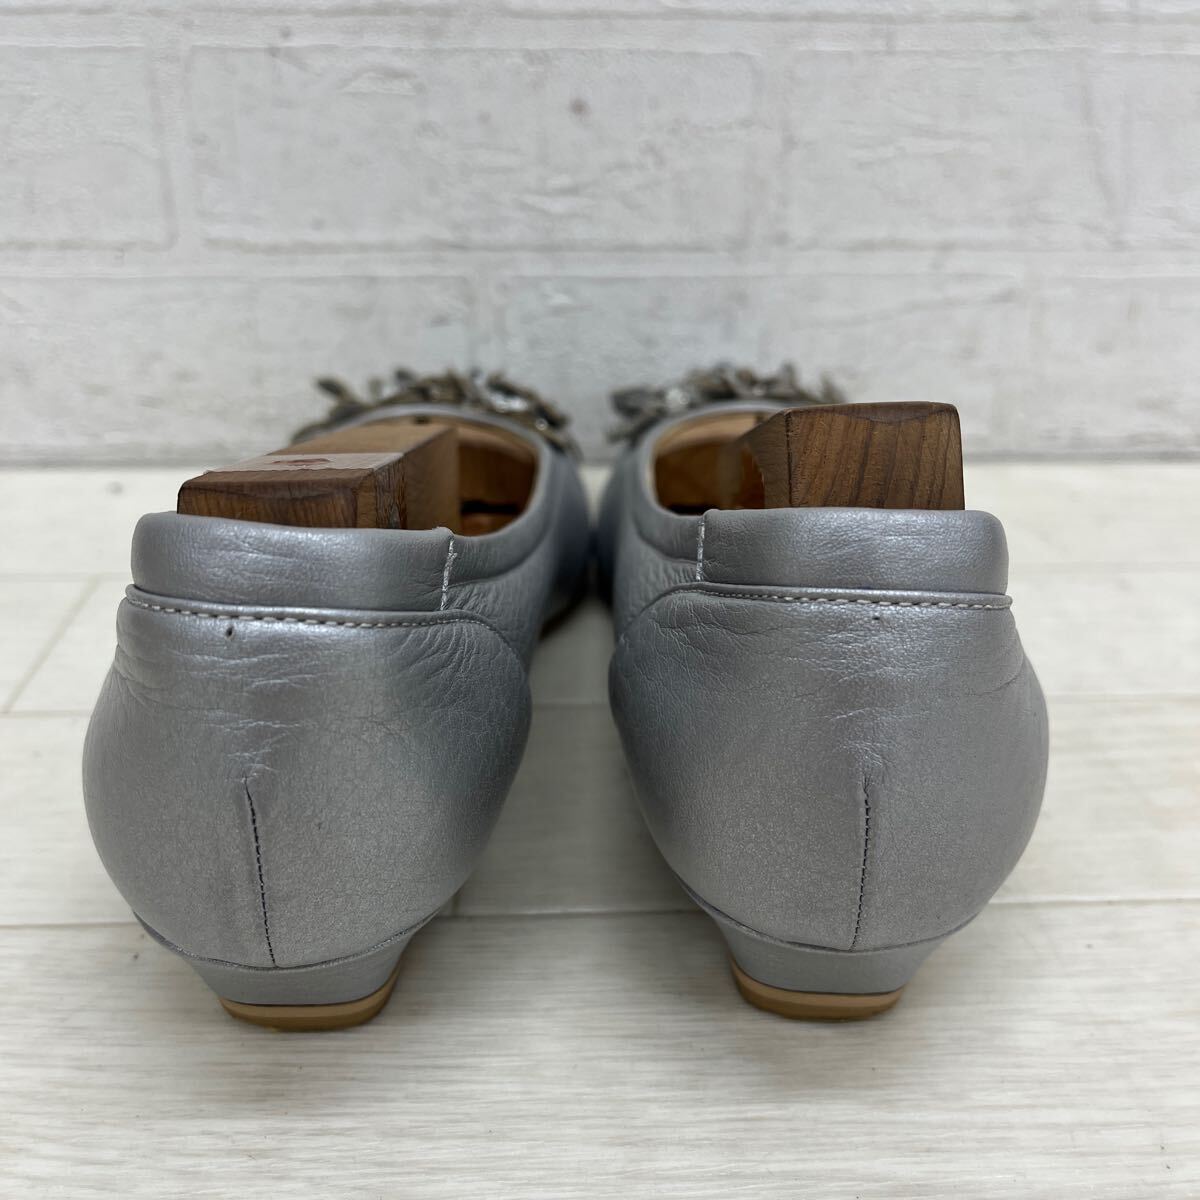 1383* сделано в Японии MIHAMAmi - ma обувь обувь туфли-лодочки раунд tu Wedge каблук casual серебряный женский 22.5